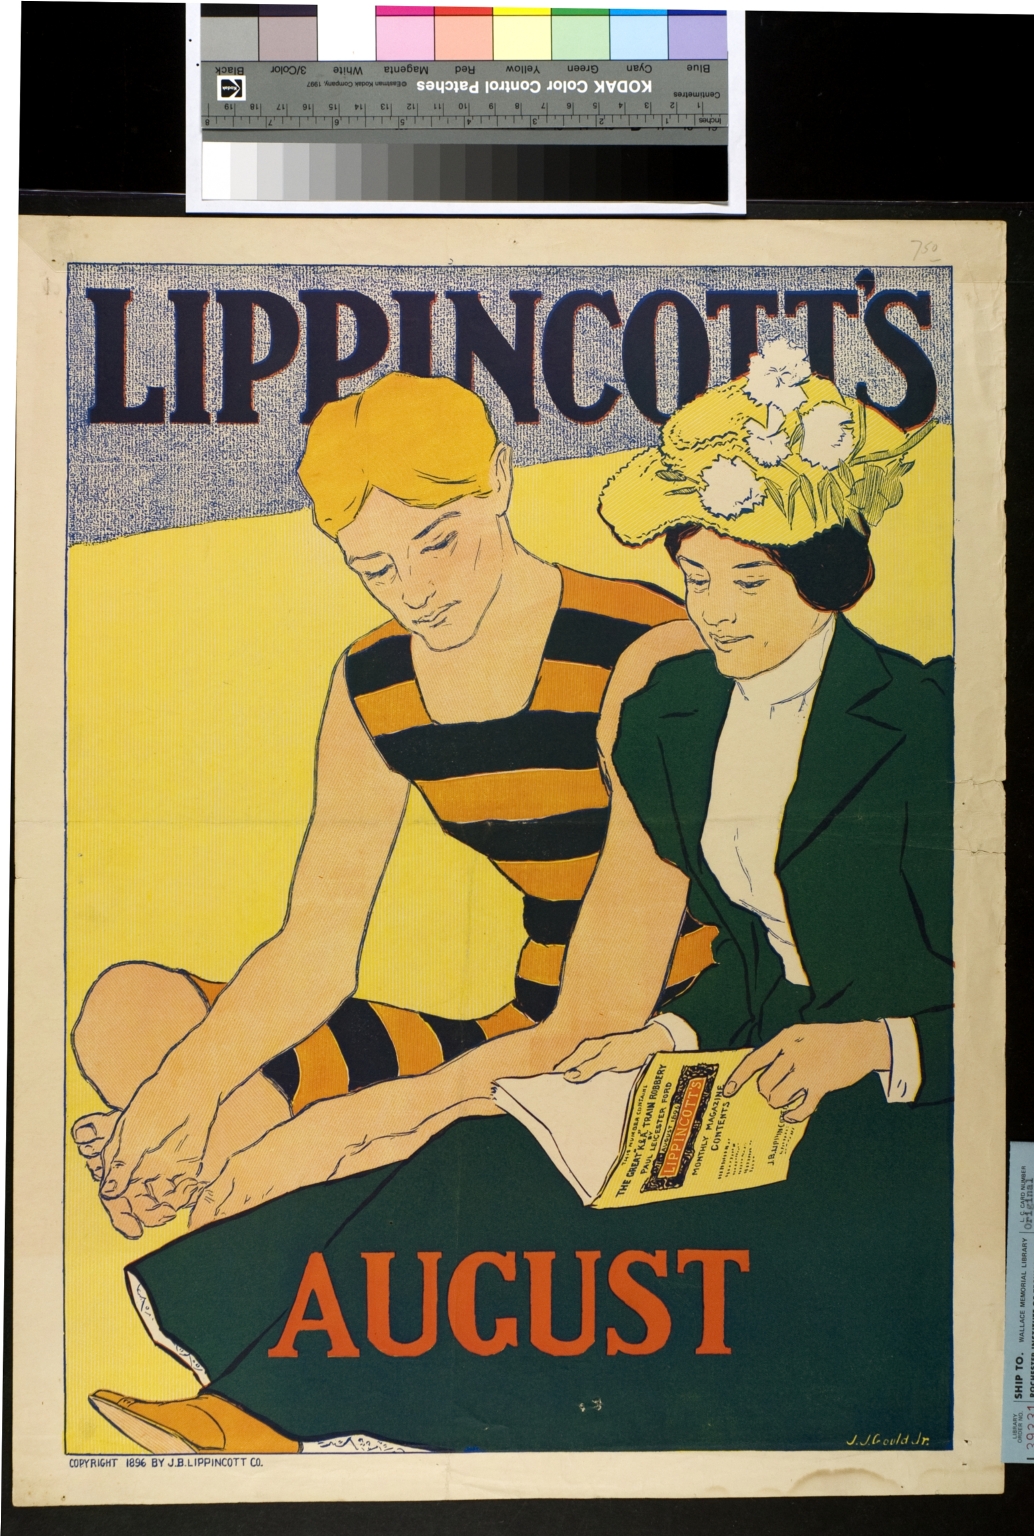 Lippincott's August